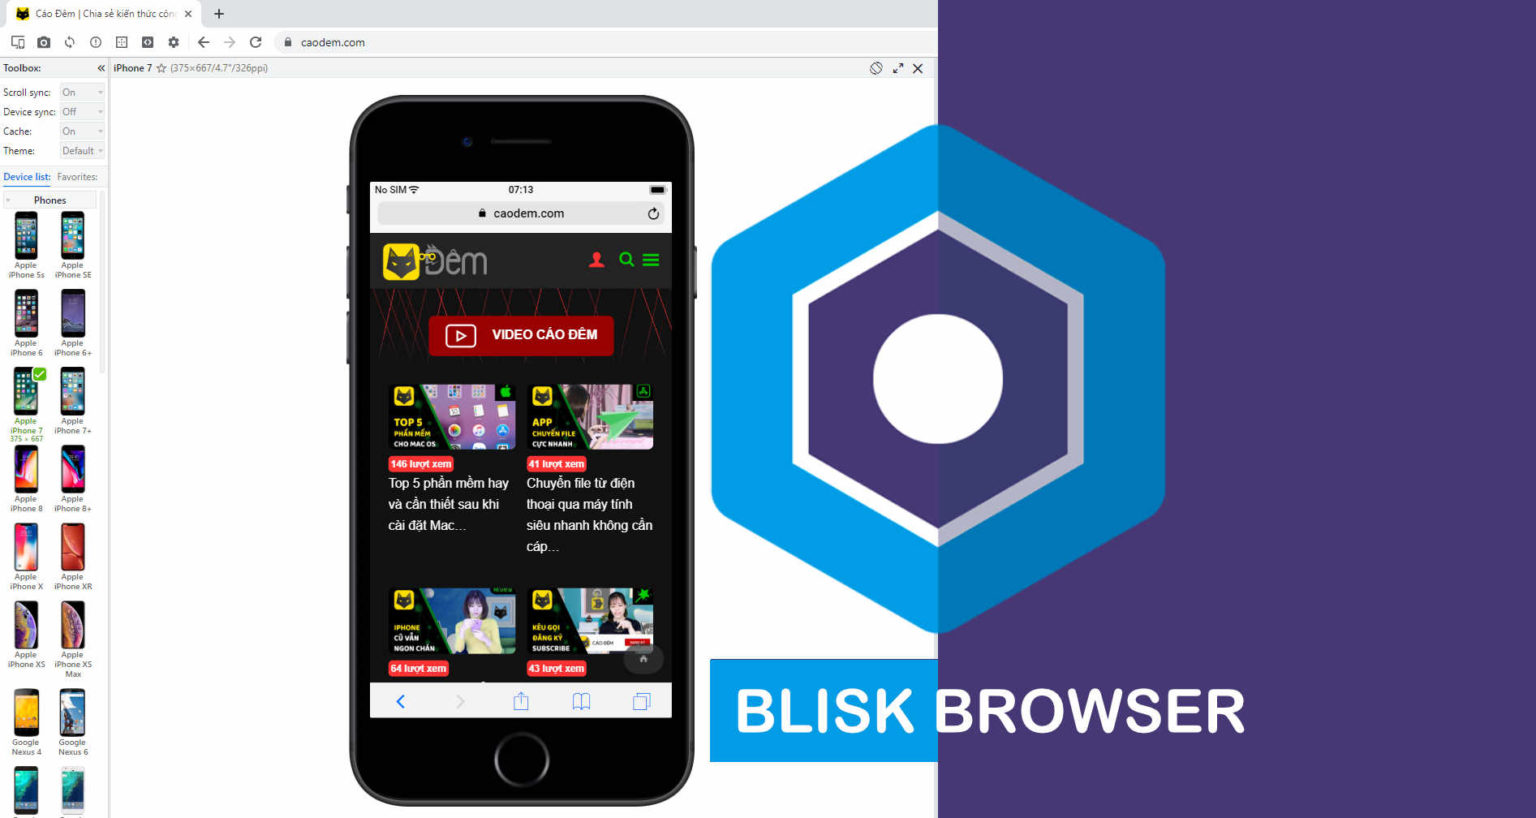 blisk browser